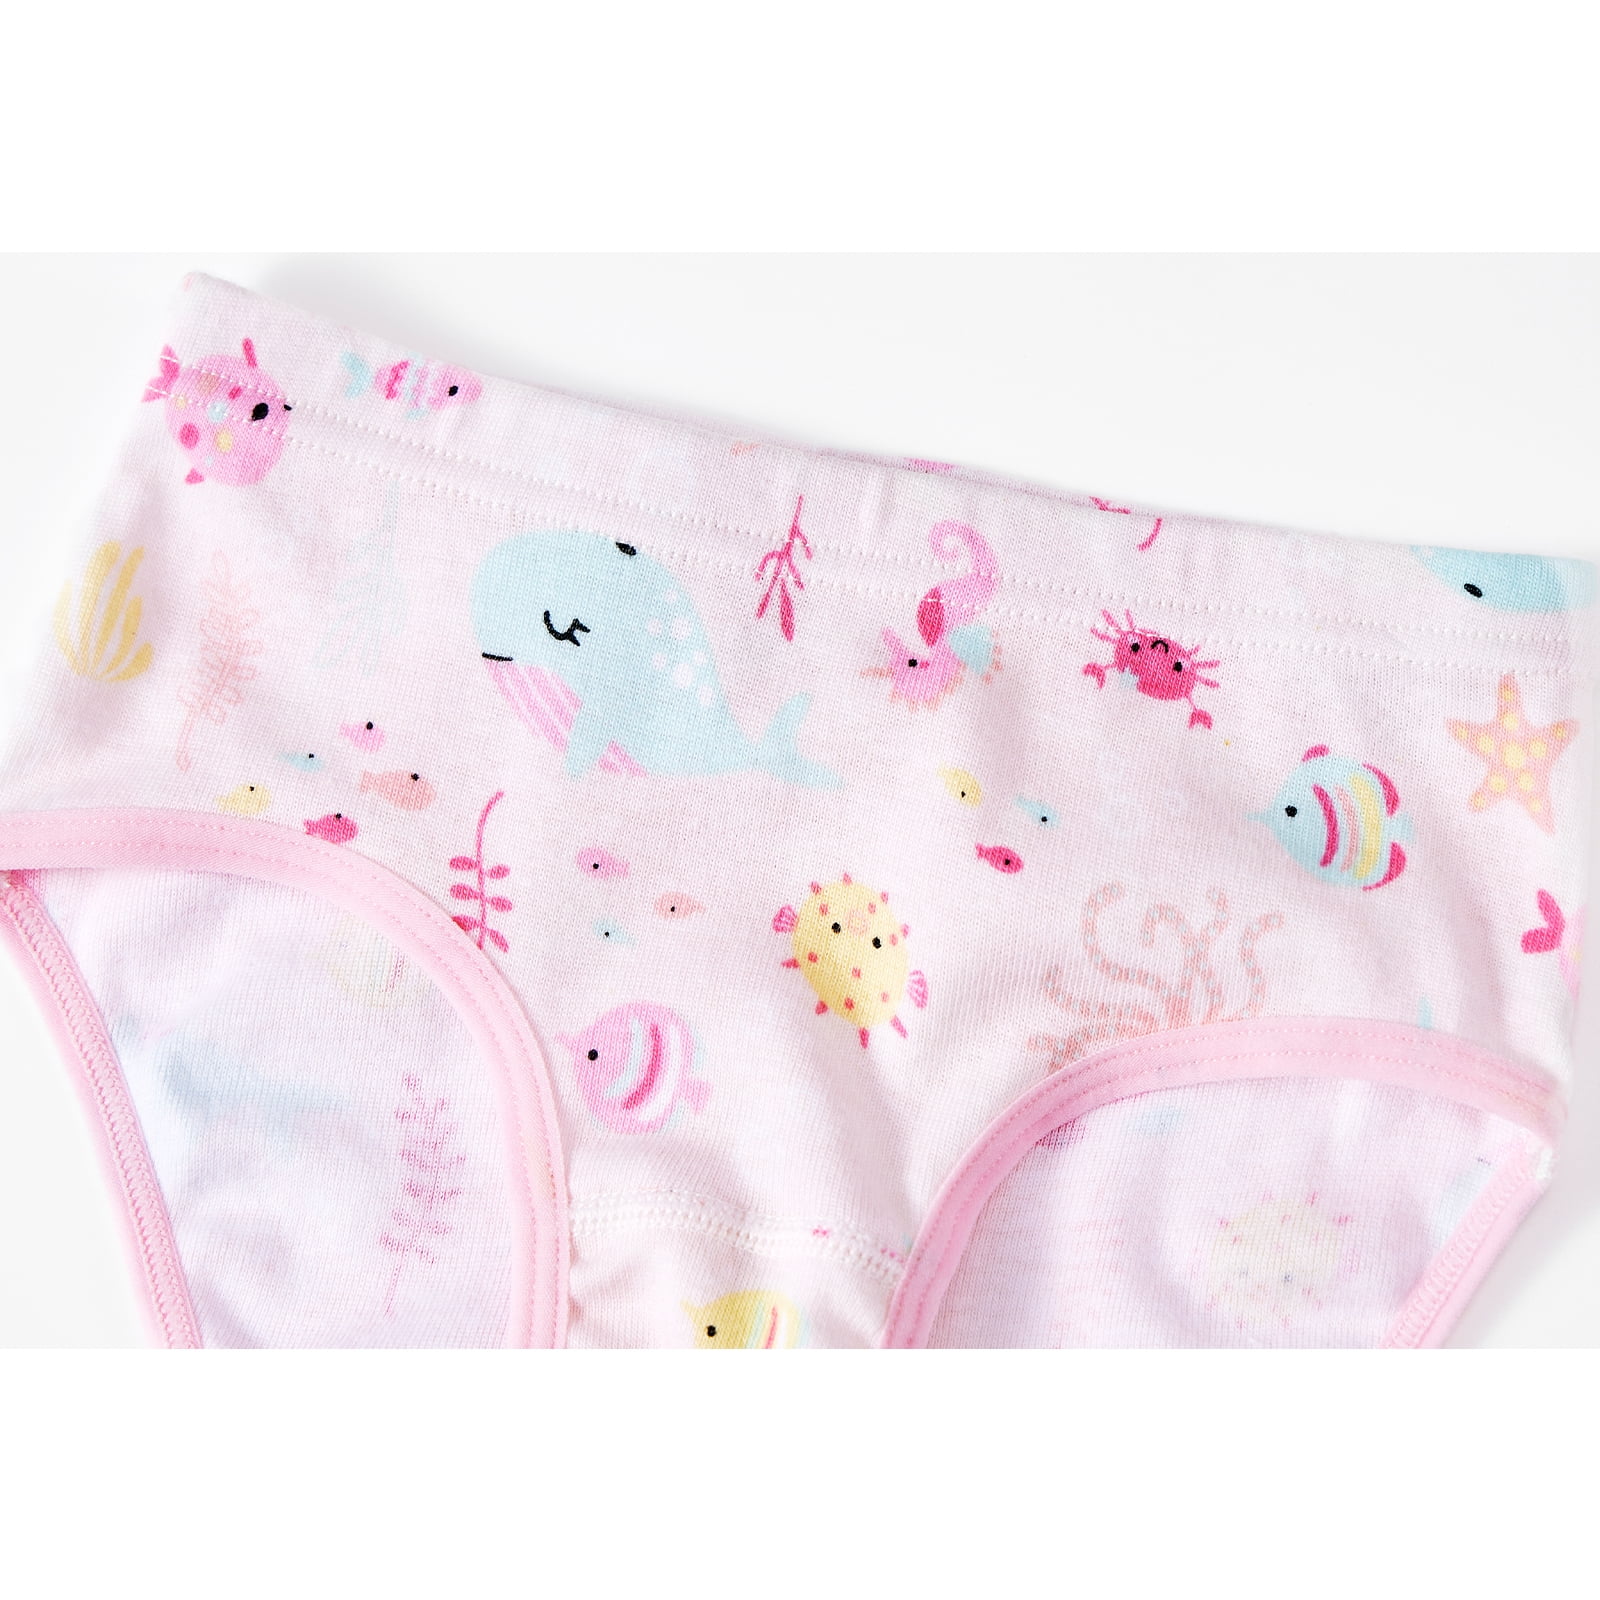 SYNPOS Girls Underwear 100% Cotton Underwear for Girls Breathable Toddler  Girl Underwear Comfort Baby Girls Panties 6 Packs, Girls Underwear New, 3-4  years : Buy Online at Best Price in KSA 